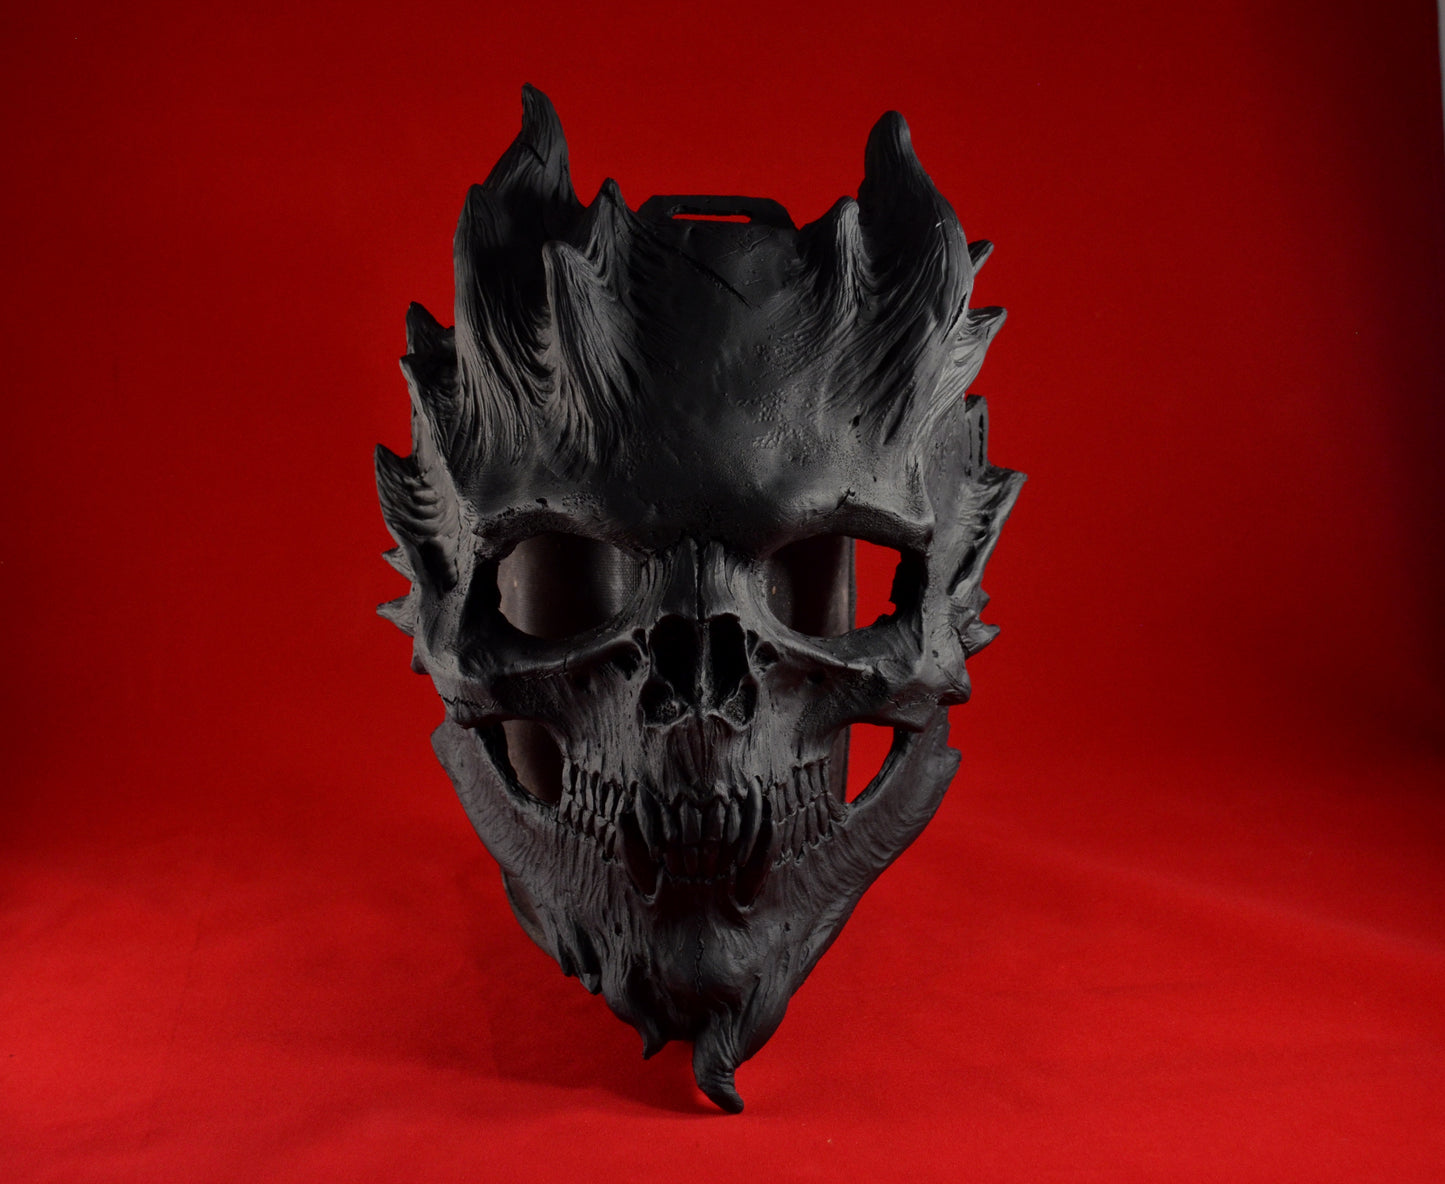 Halloween horror bloody warrior skull mask game horror skull mask